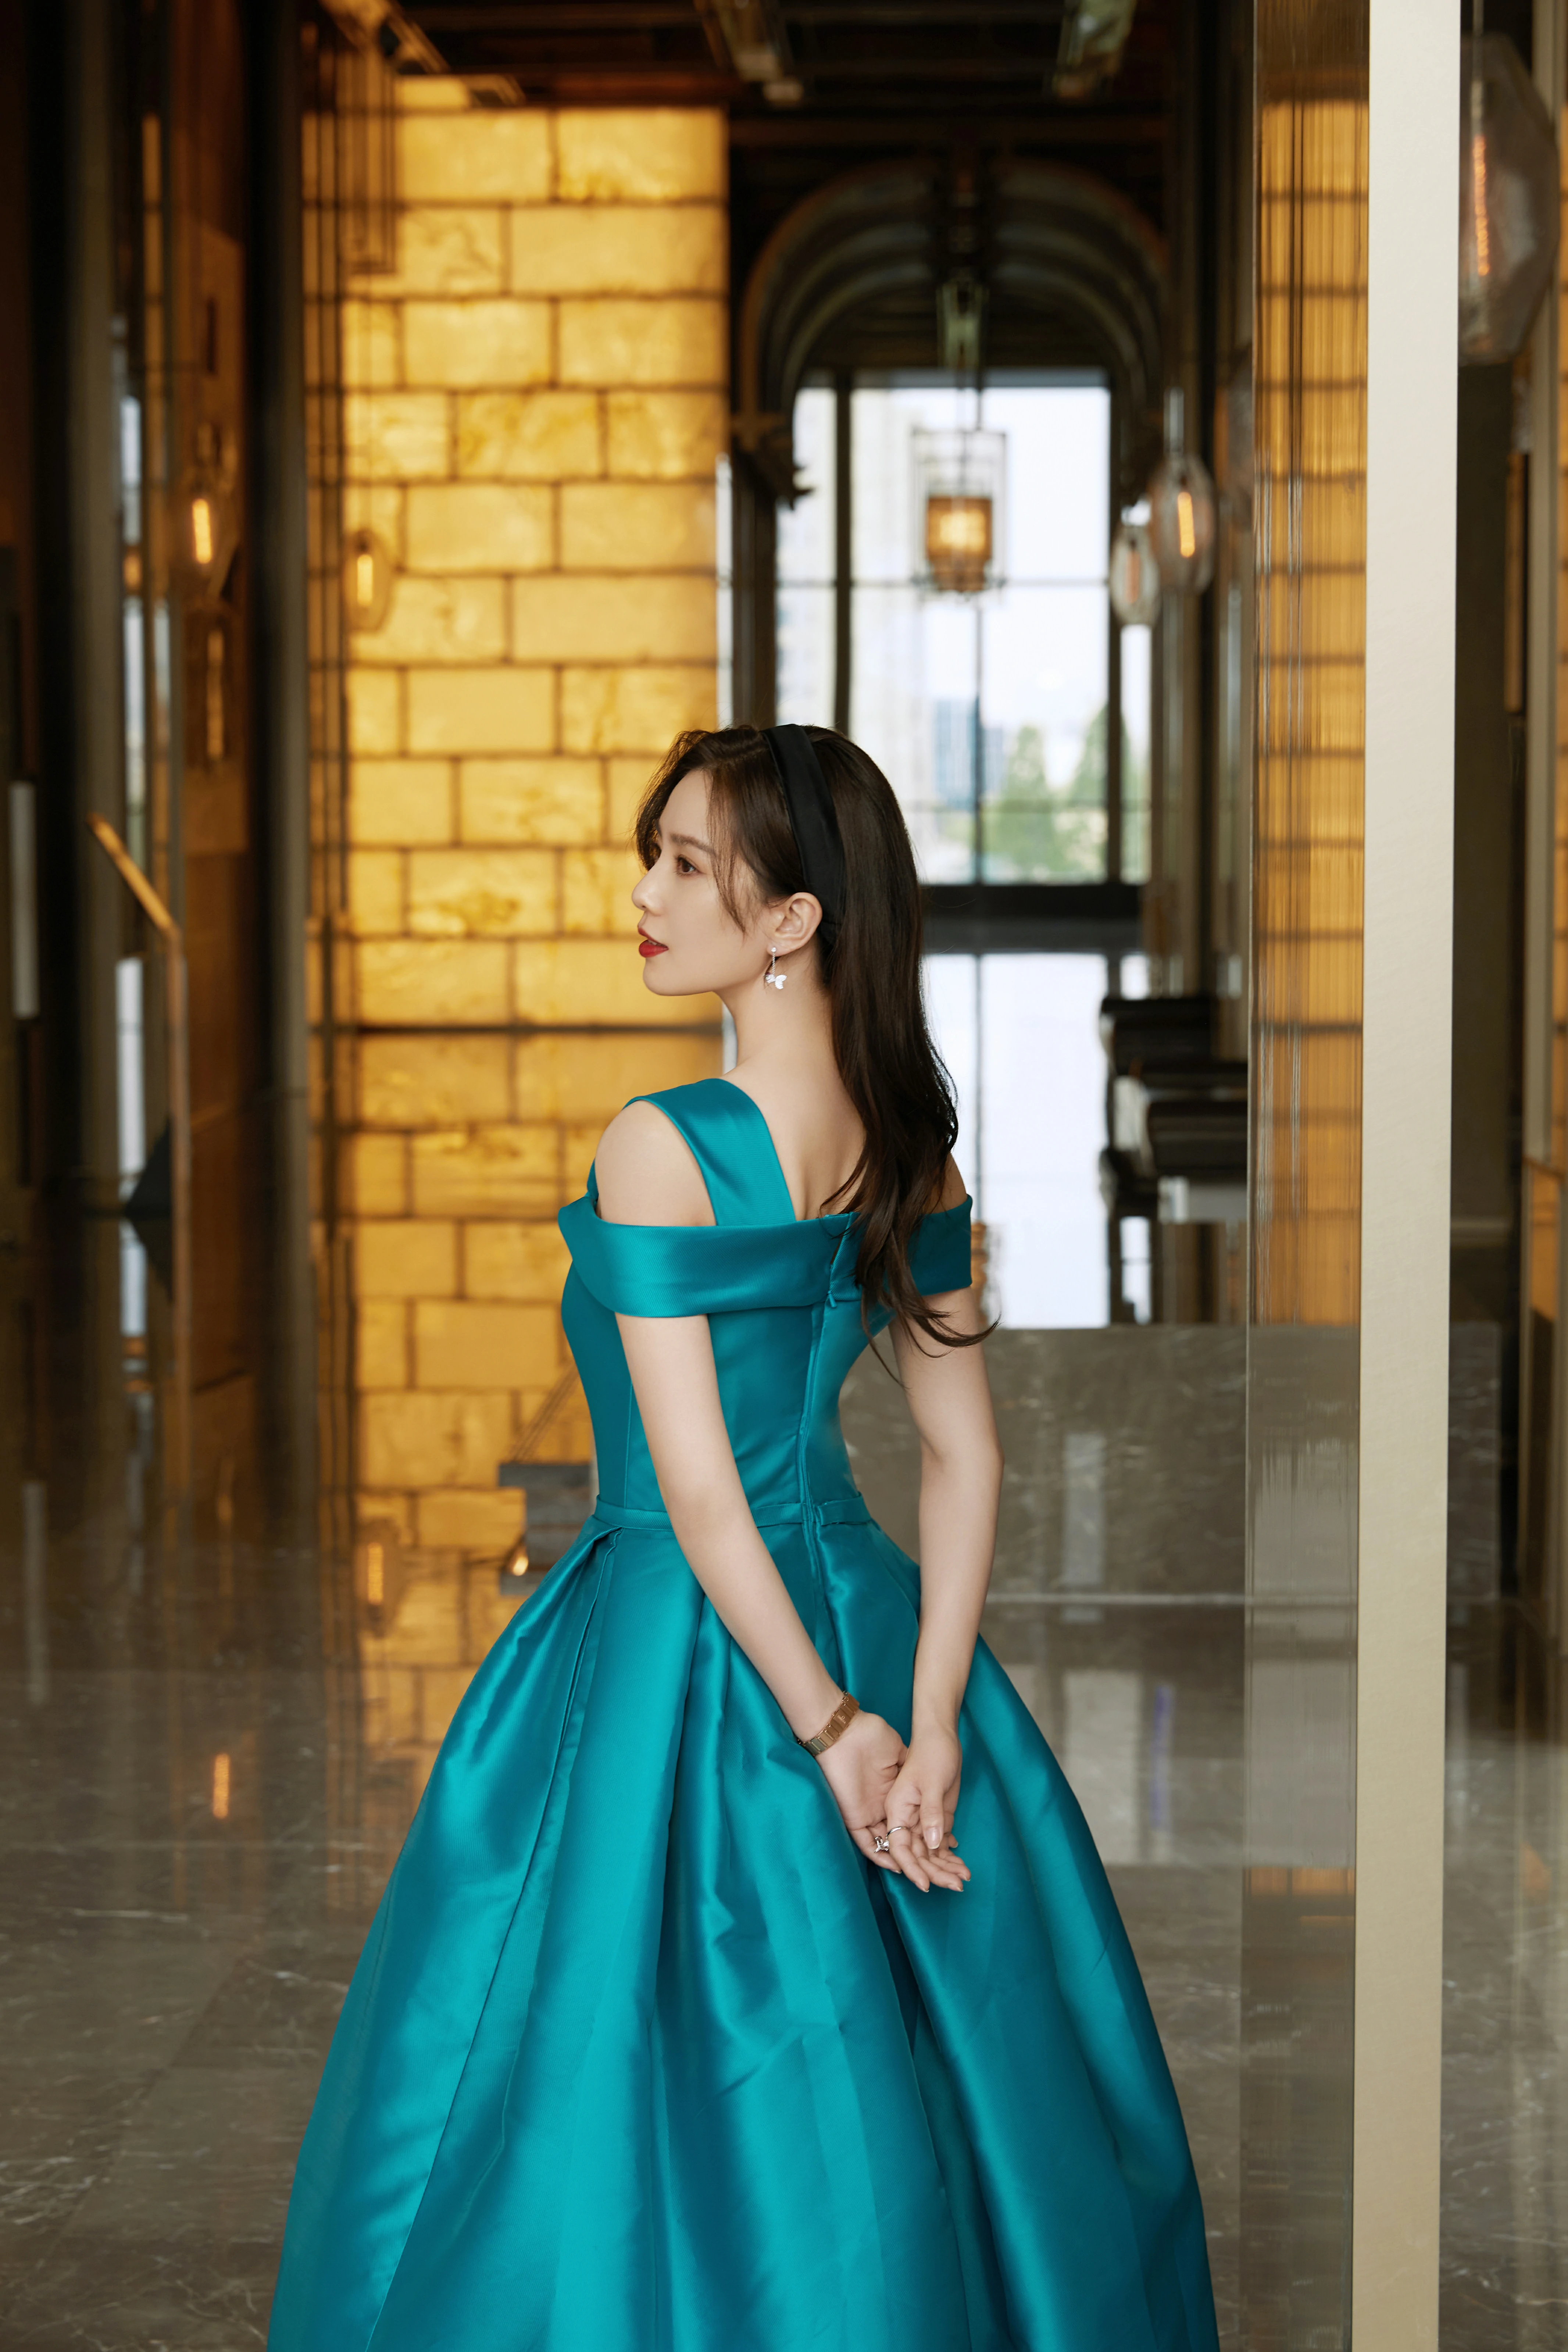 刘诗诗绿裙装好似迪士尼在逃公主练过芭蕾的气质就是优雅,